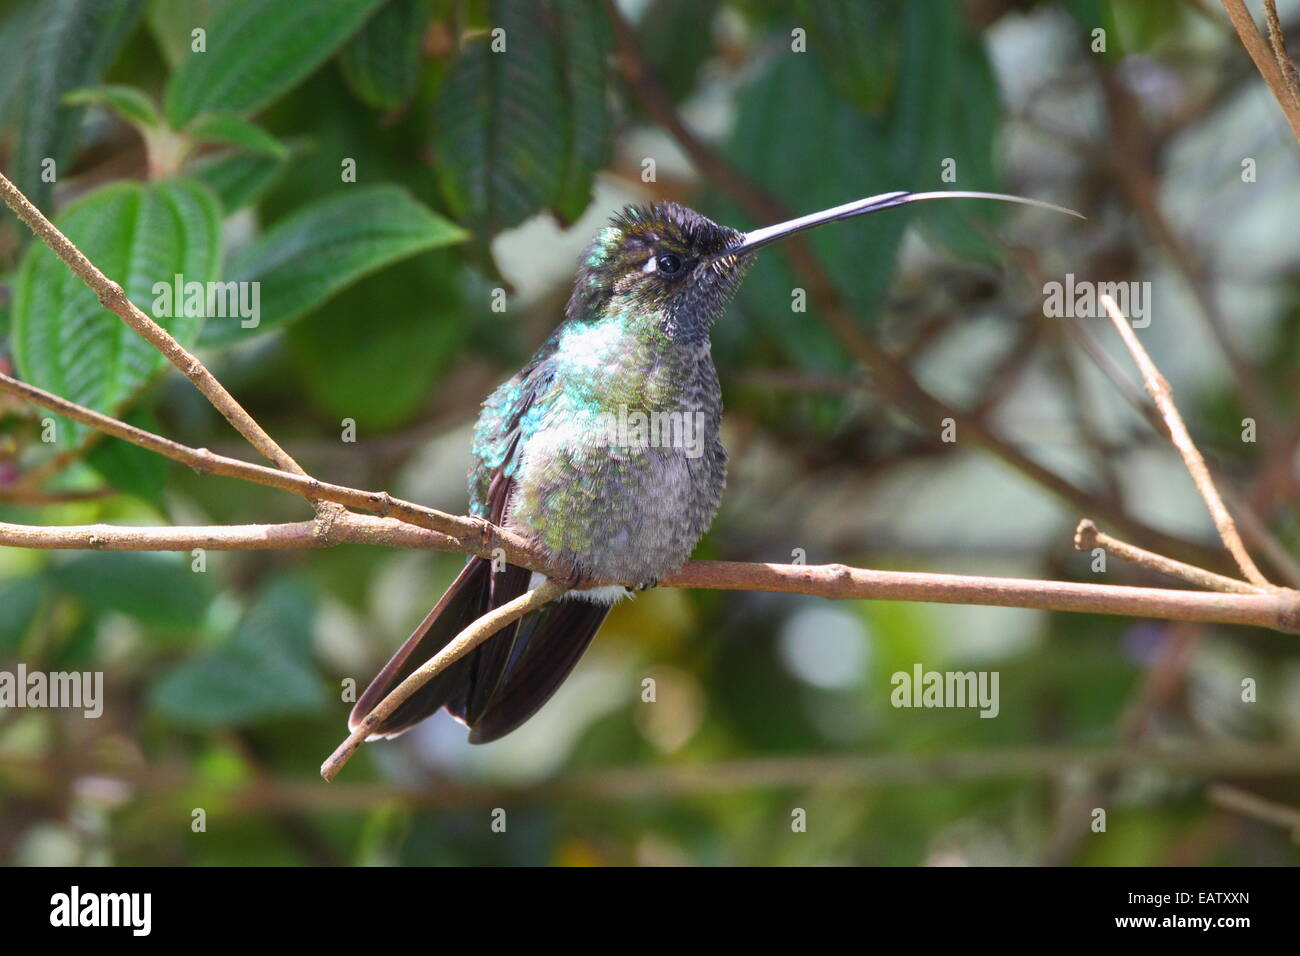 Ritratto di un hummingbird palissonatrice con la sua linguetta estesa. Foto Stock